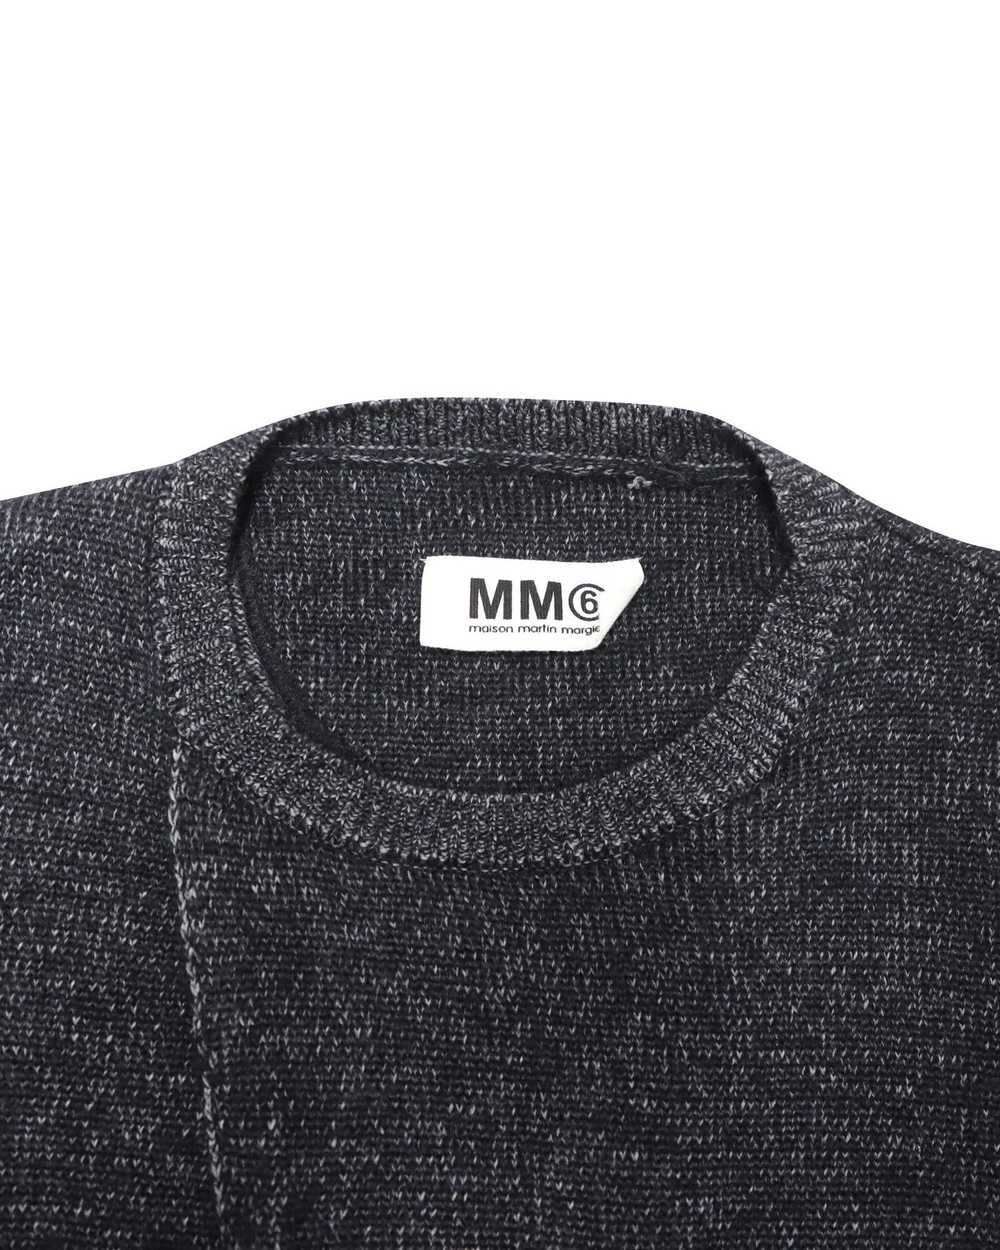 Maison Margiela Soft Knit Black Sweater Dress - image 6